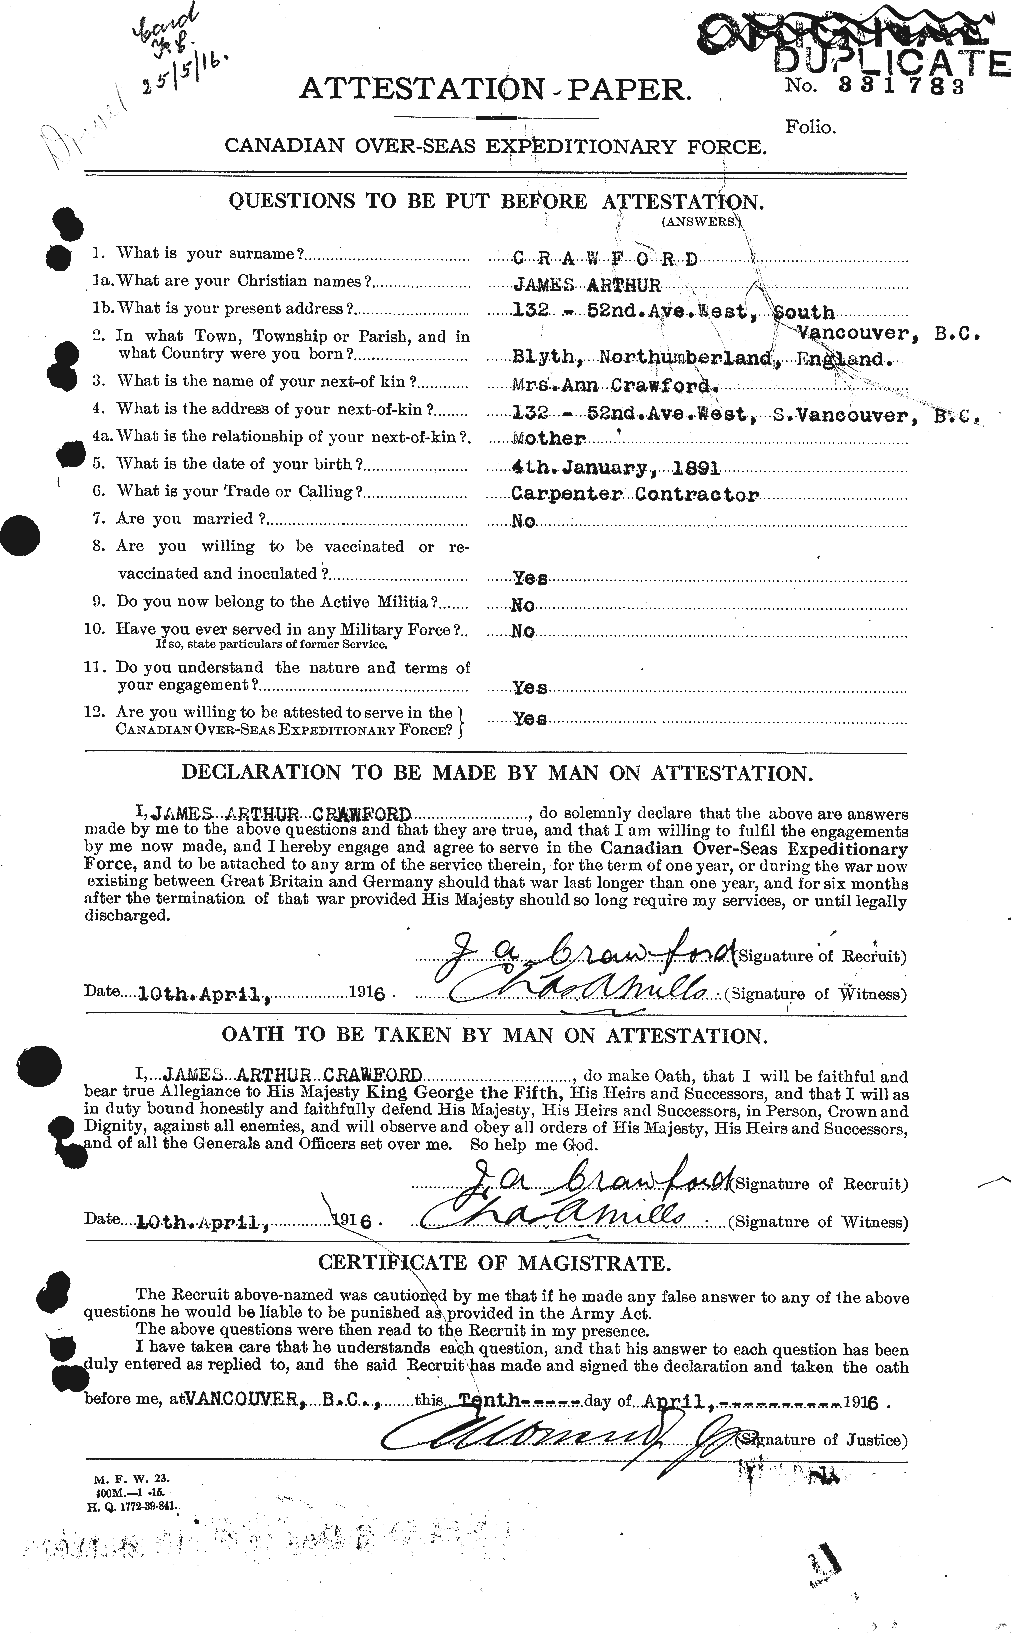 Dossiers du Personnel de la Première Guerre mondiale - CEC 062760a